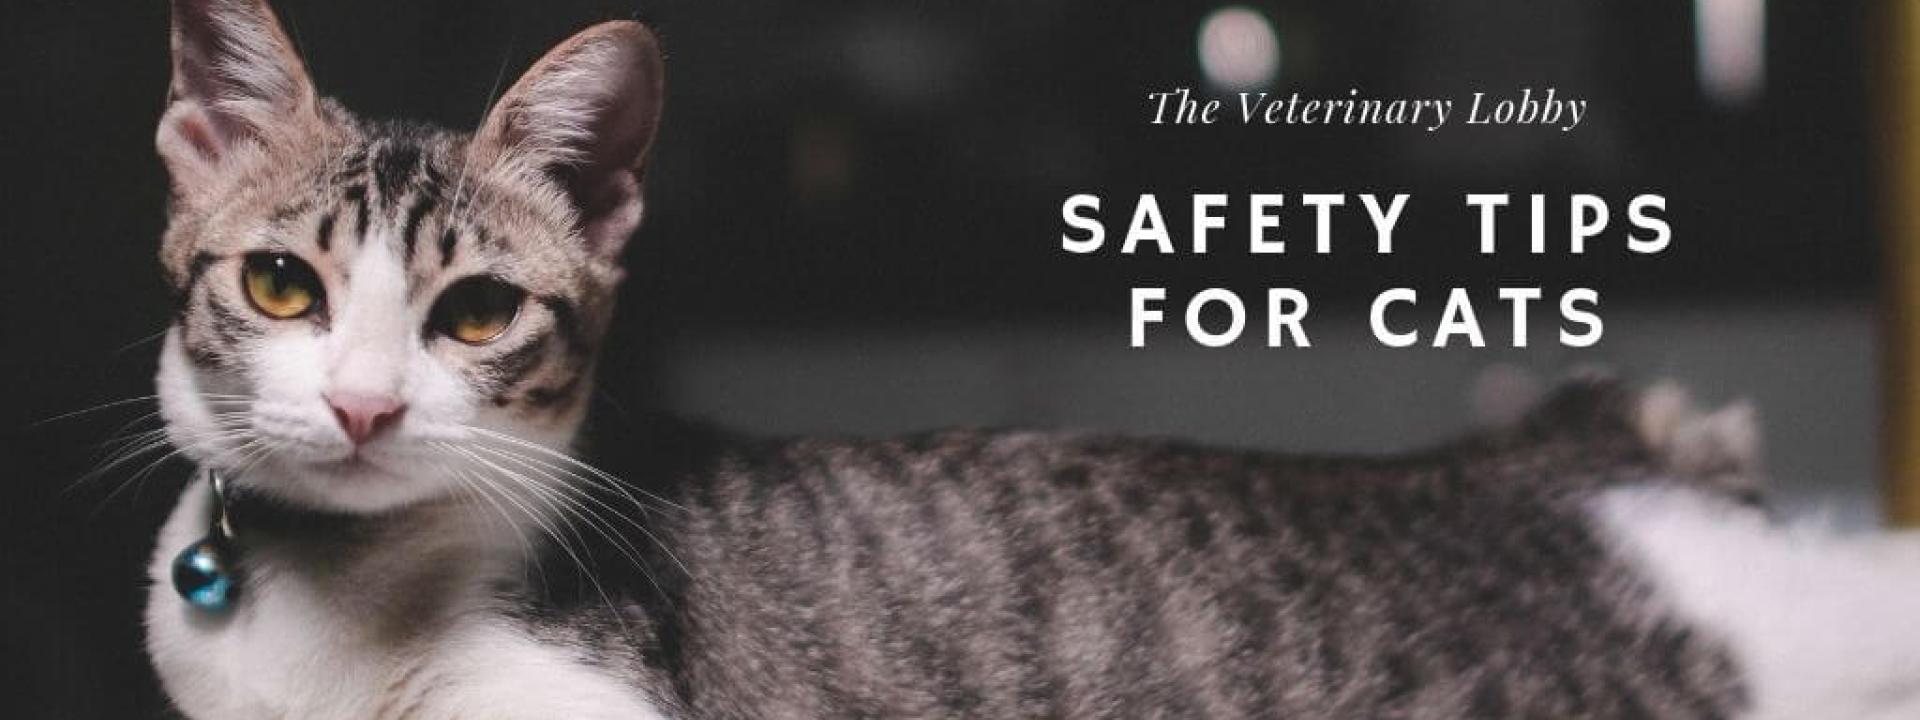 lobby-safety-cats-blog-header.jpg